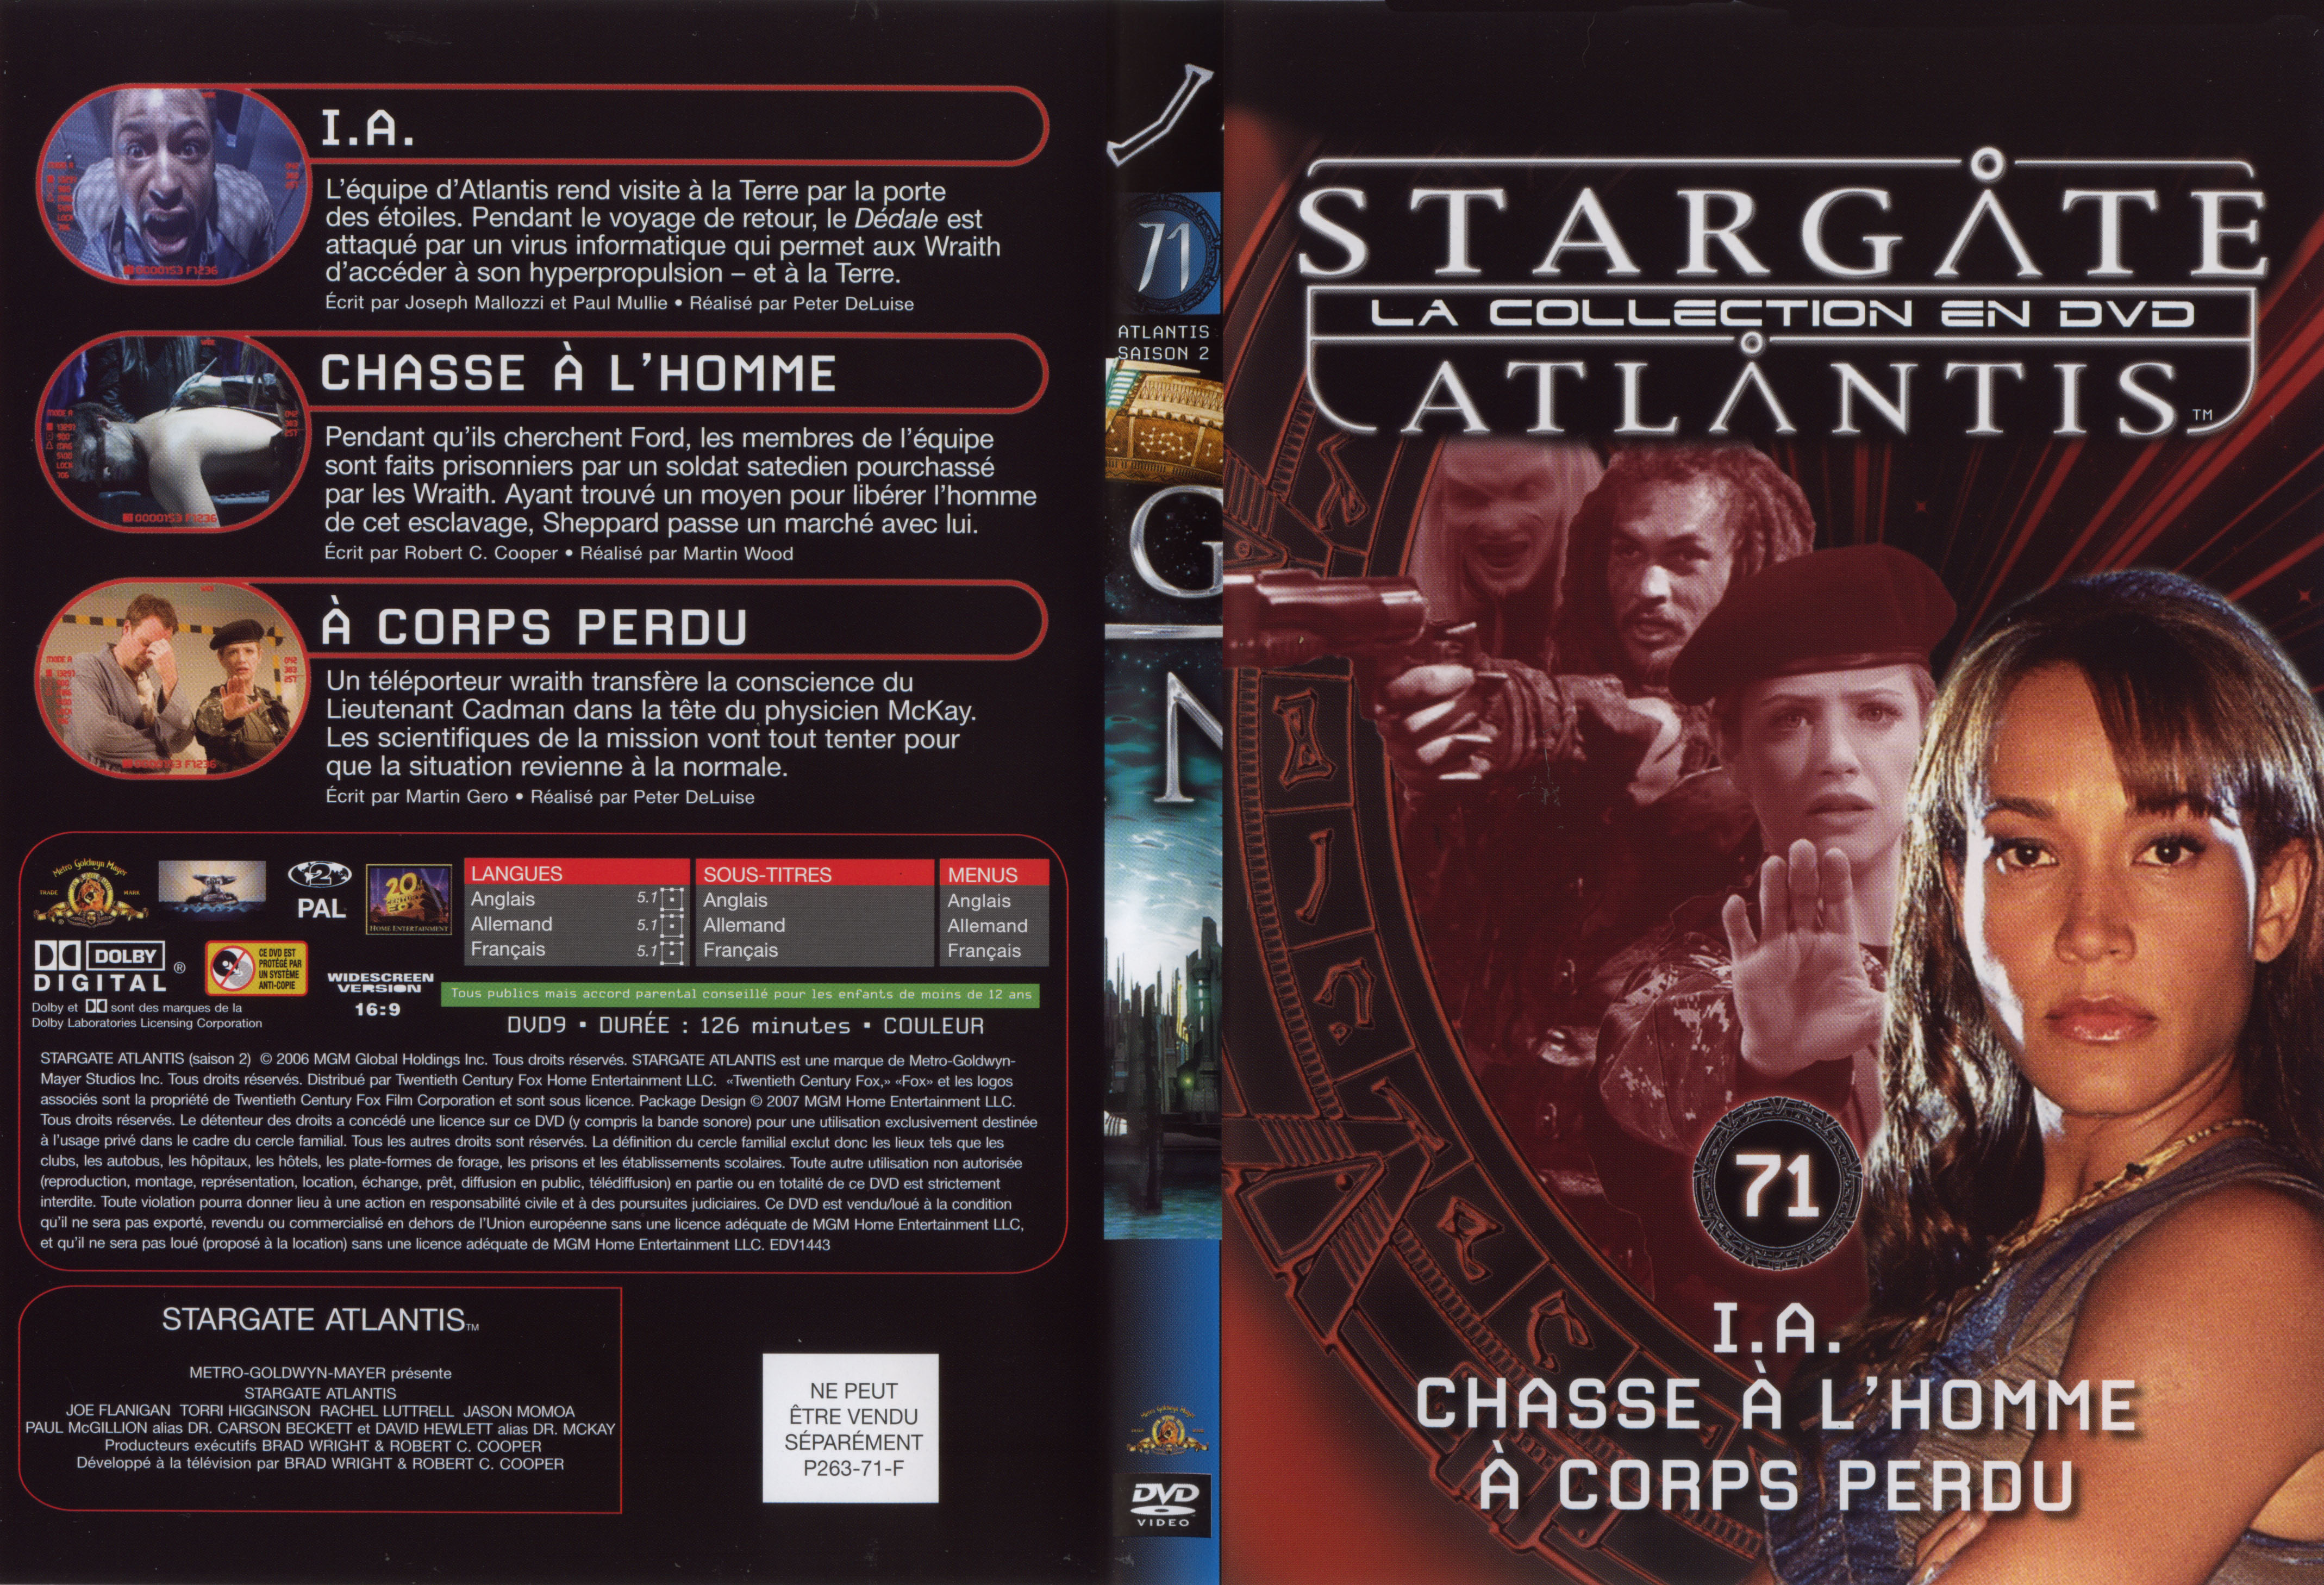 Jaquette DVD Stargate atlantis saison 2 vol 71